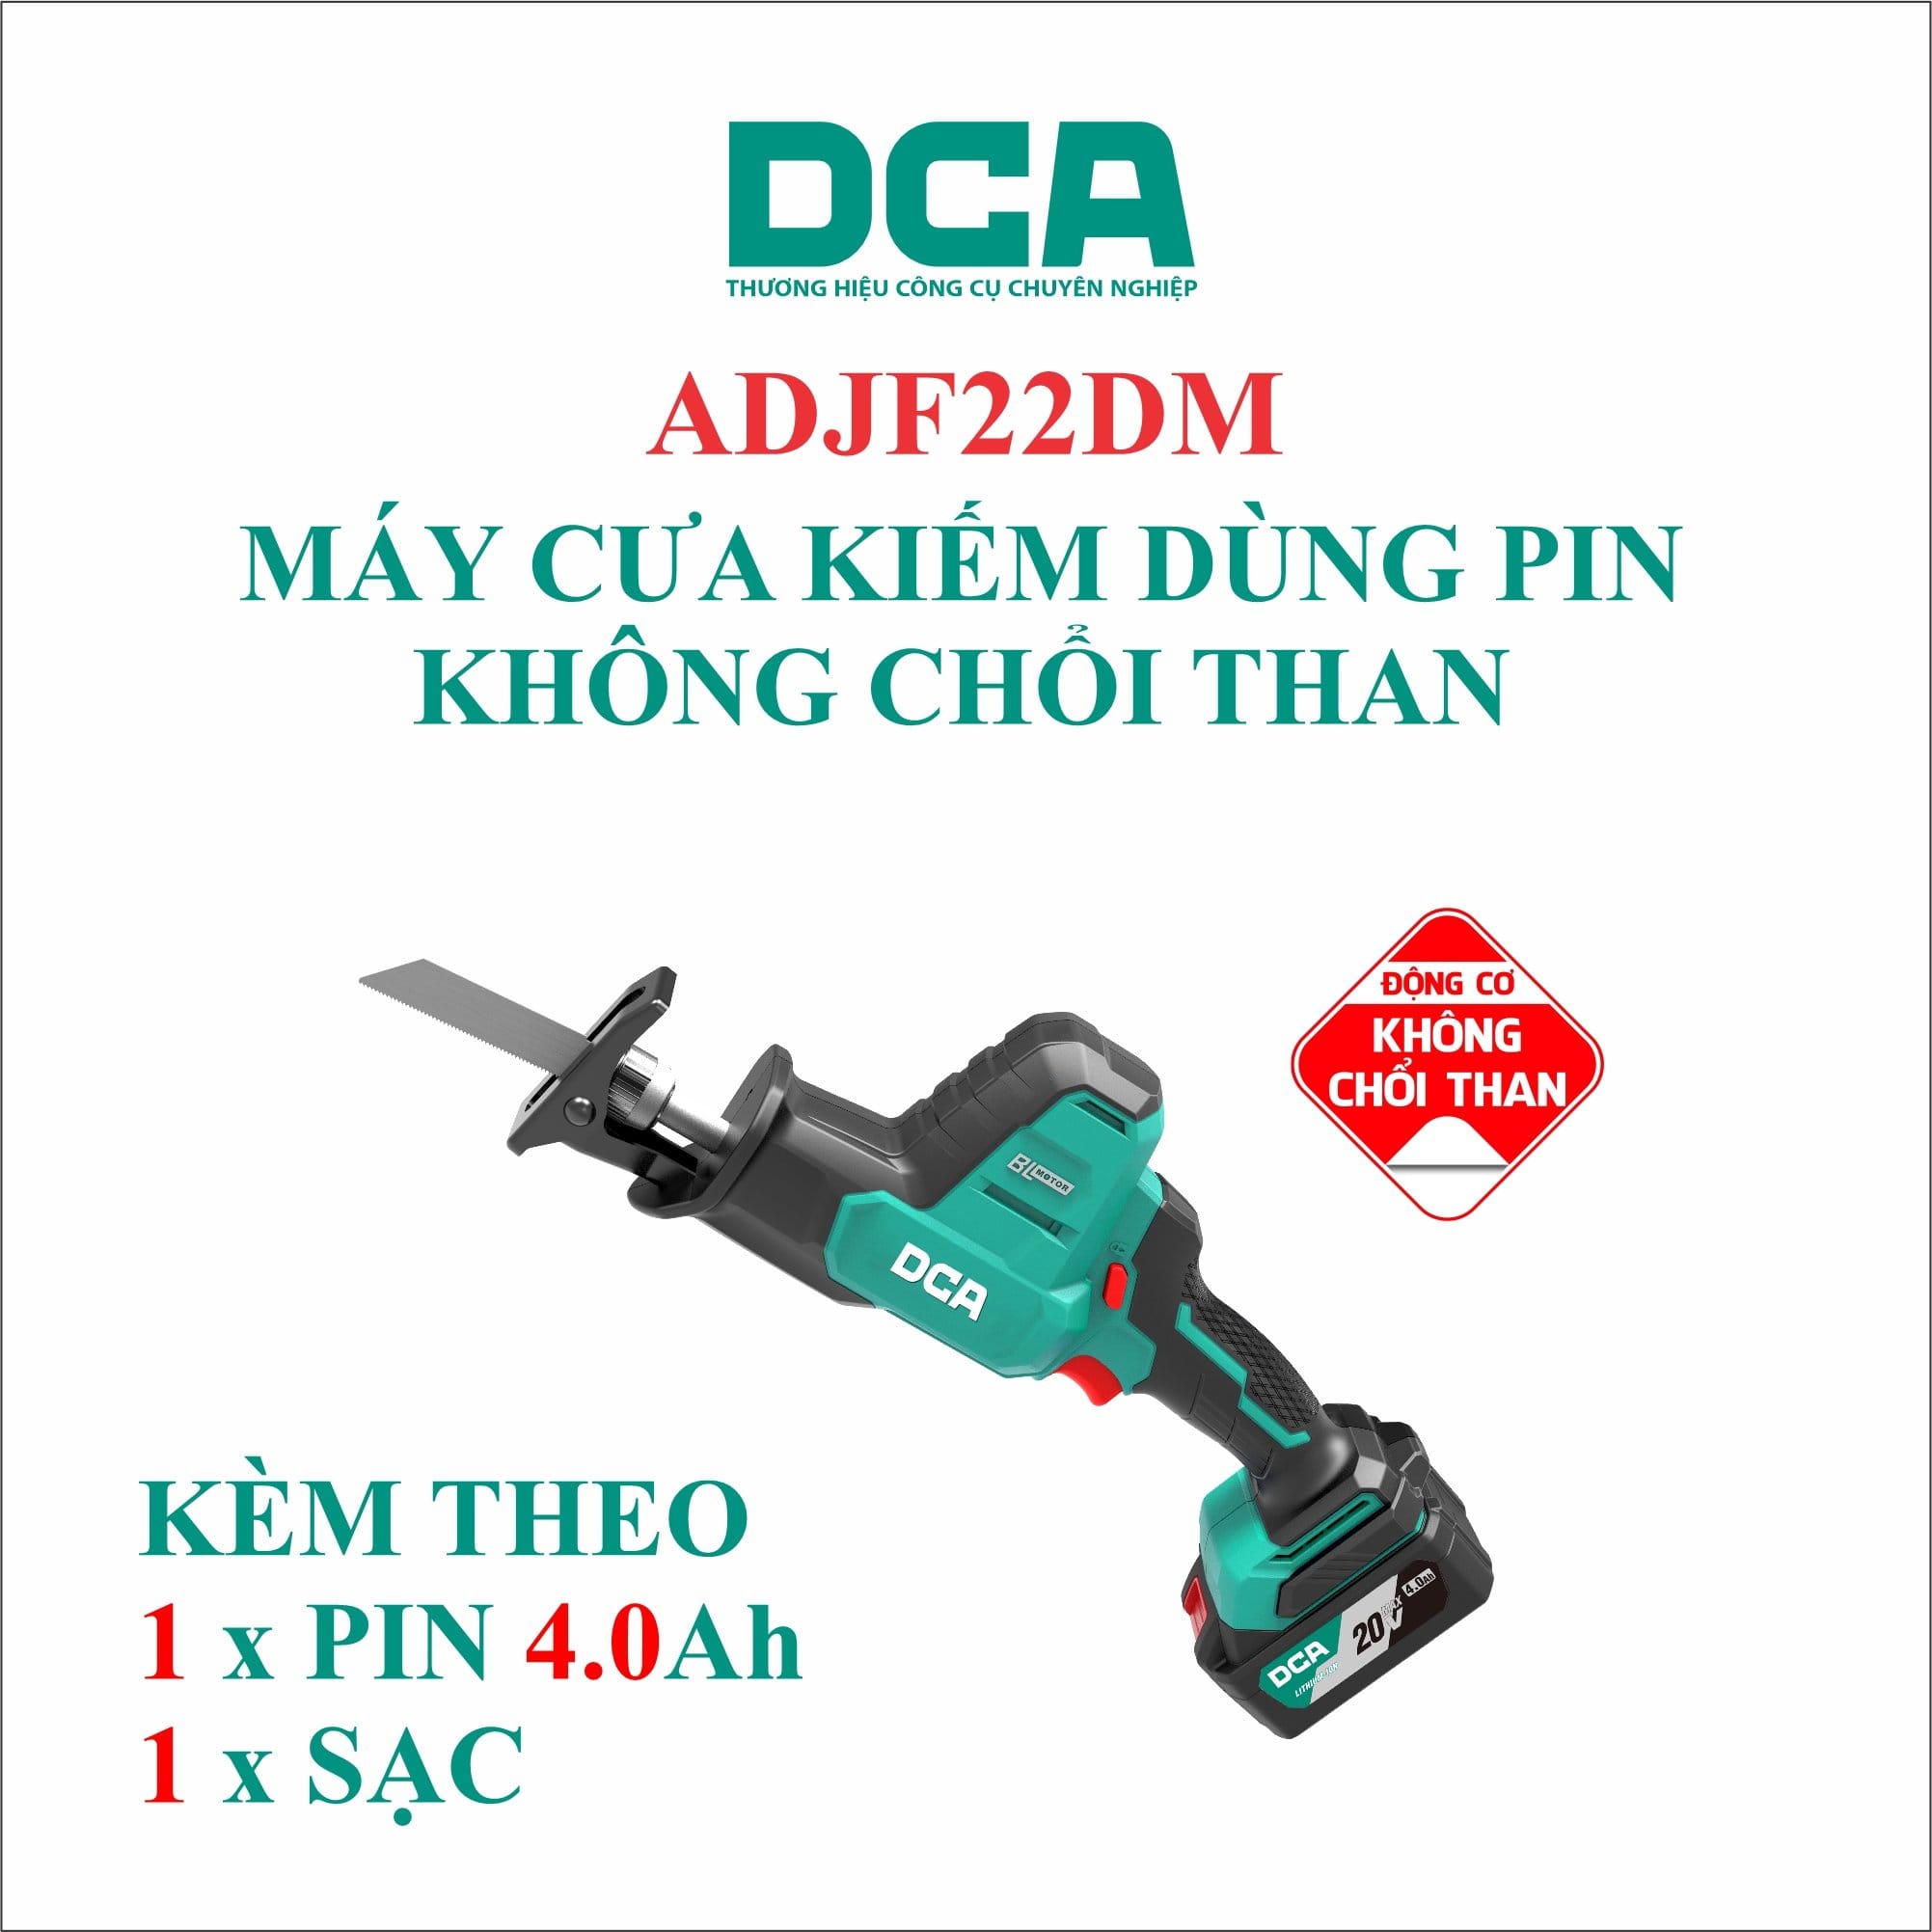 Máy cưa kiếm không chổi than dùng pin DCA ADJF22DM